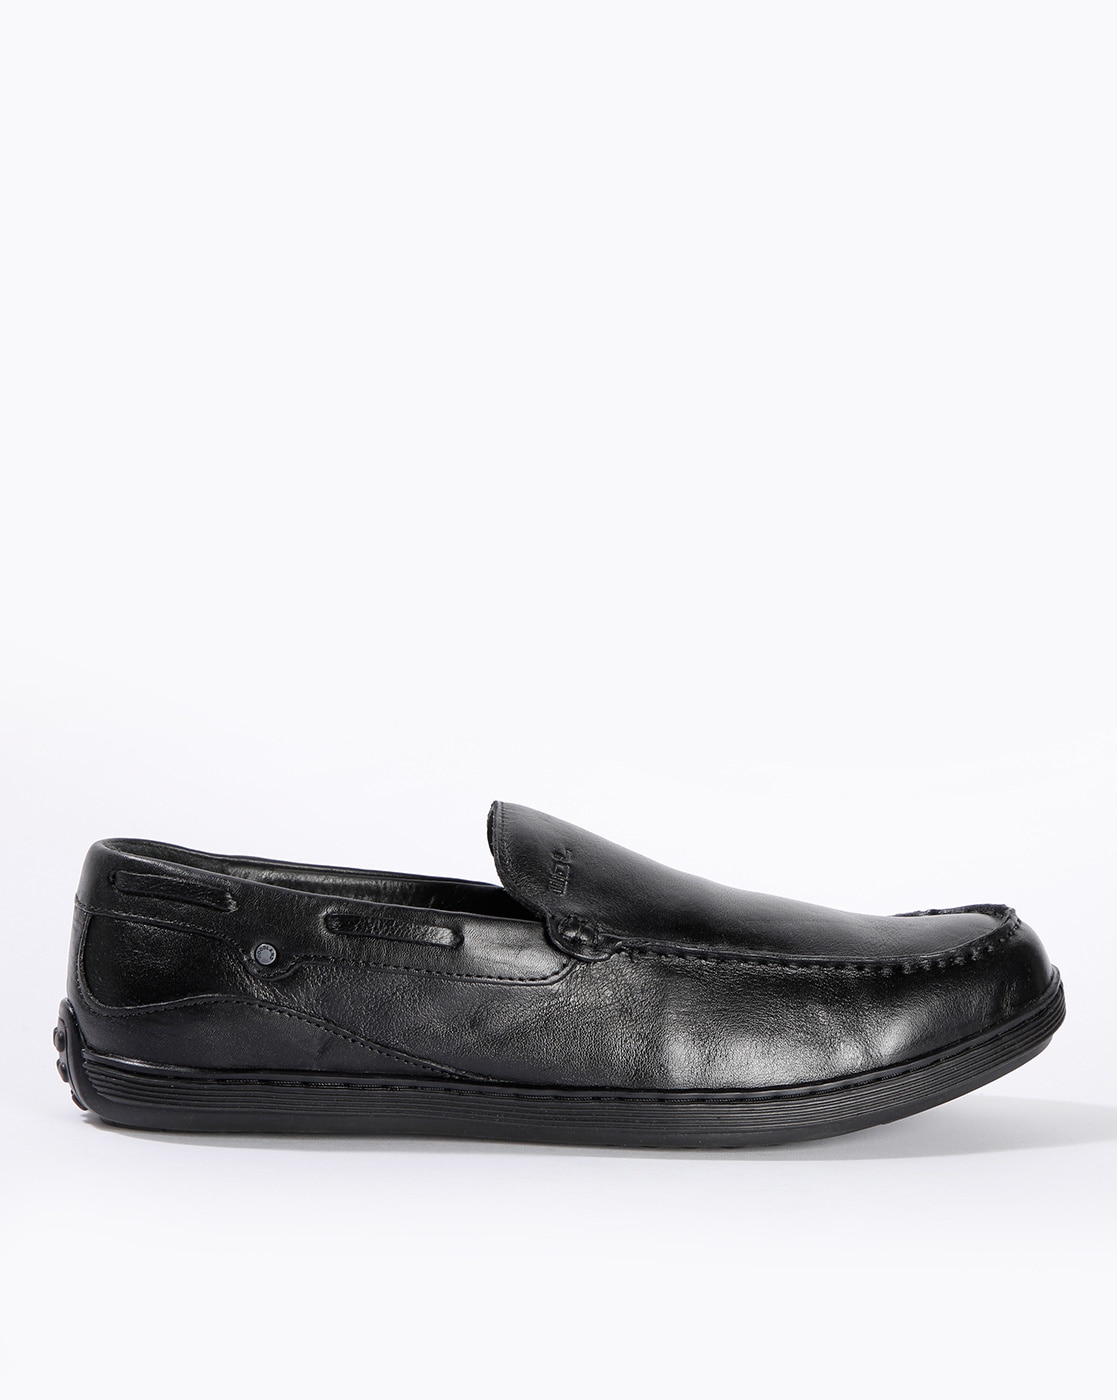 black leather shoes woodland